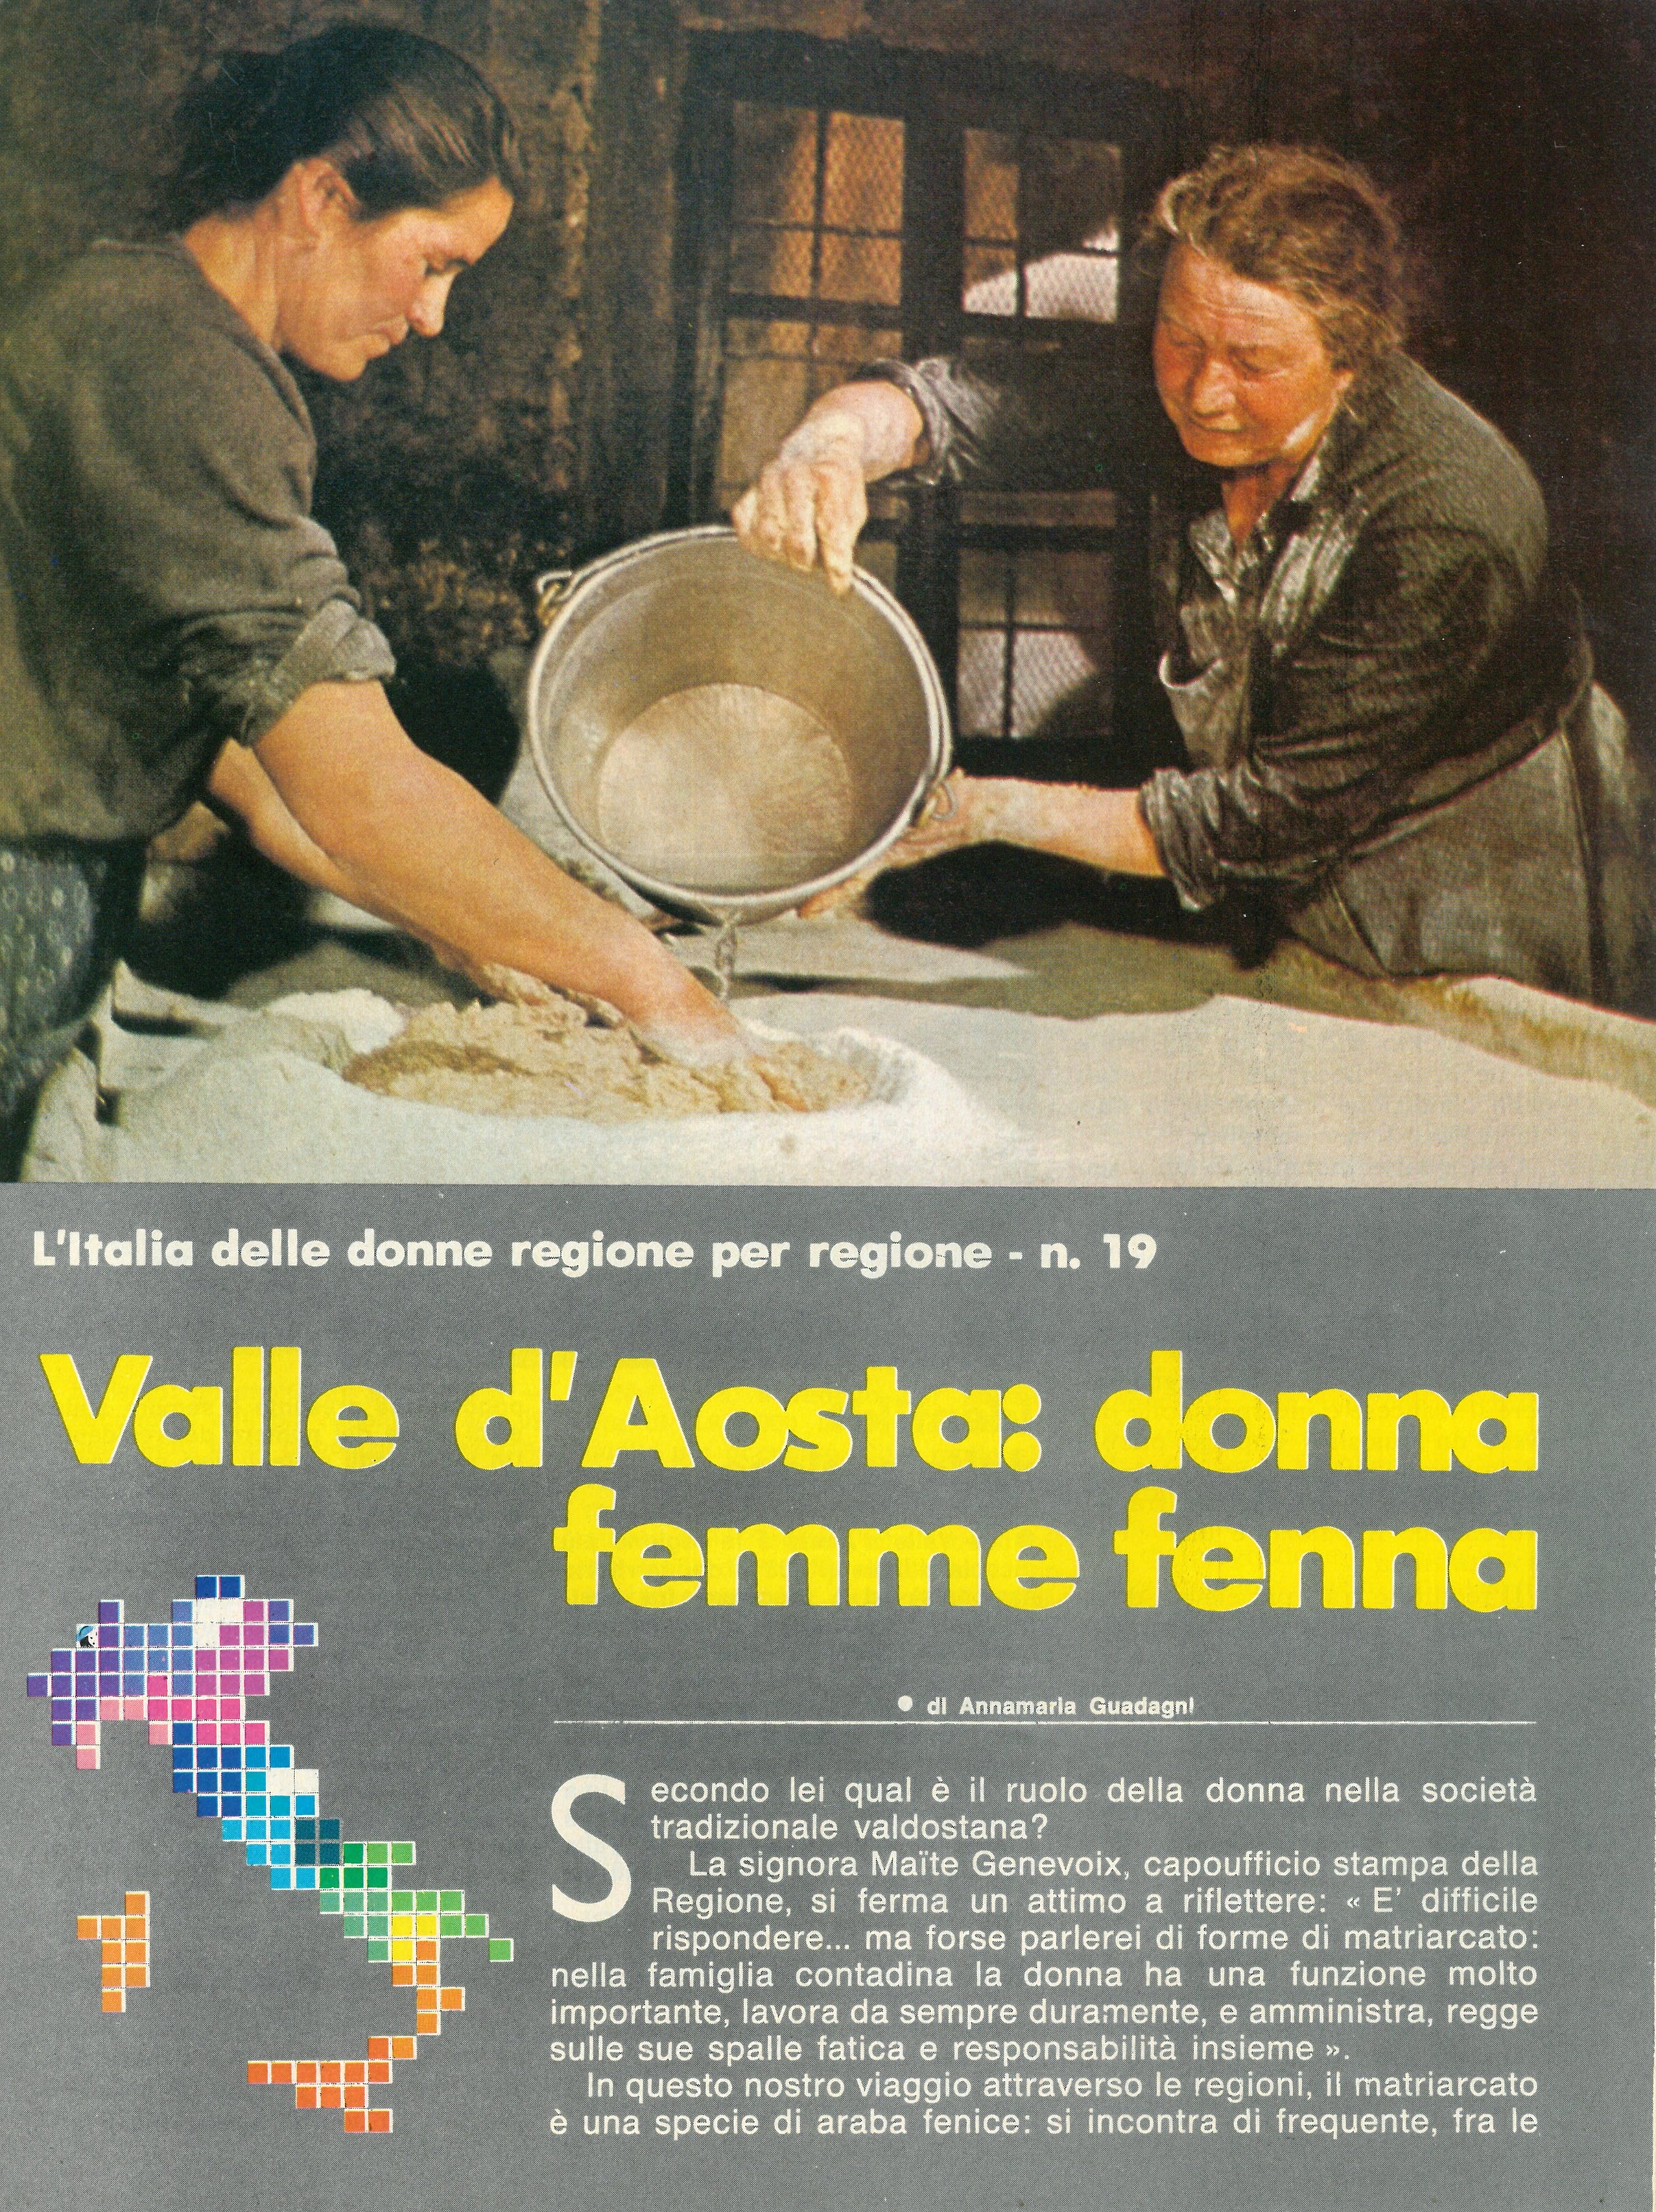 Foto: Valle d'aosta: donna femme fenna